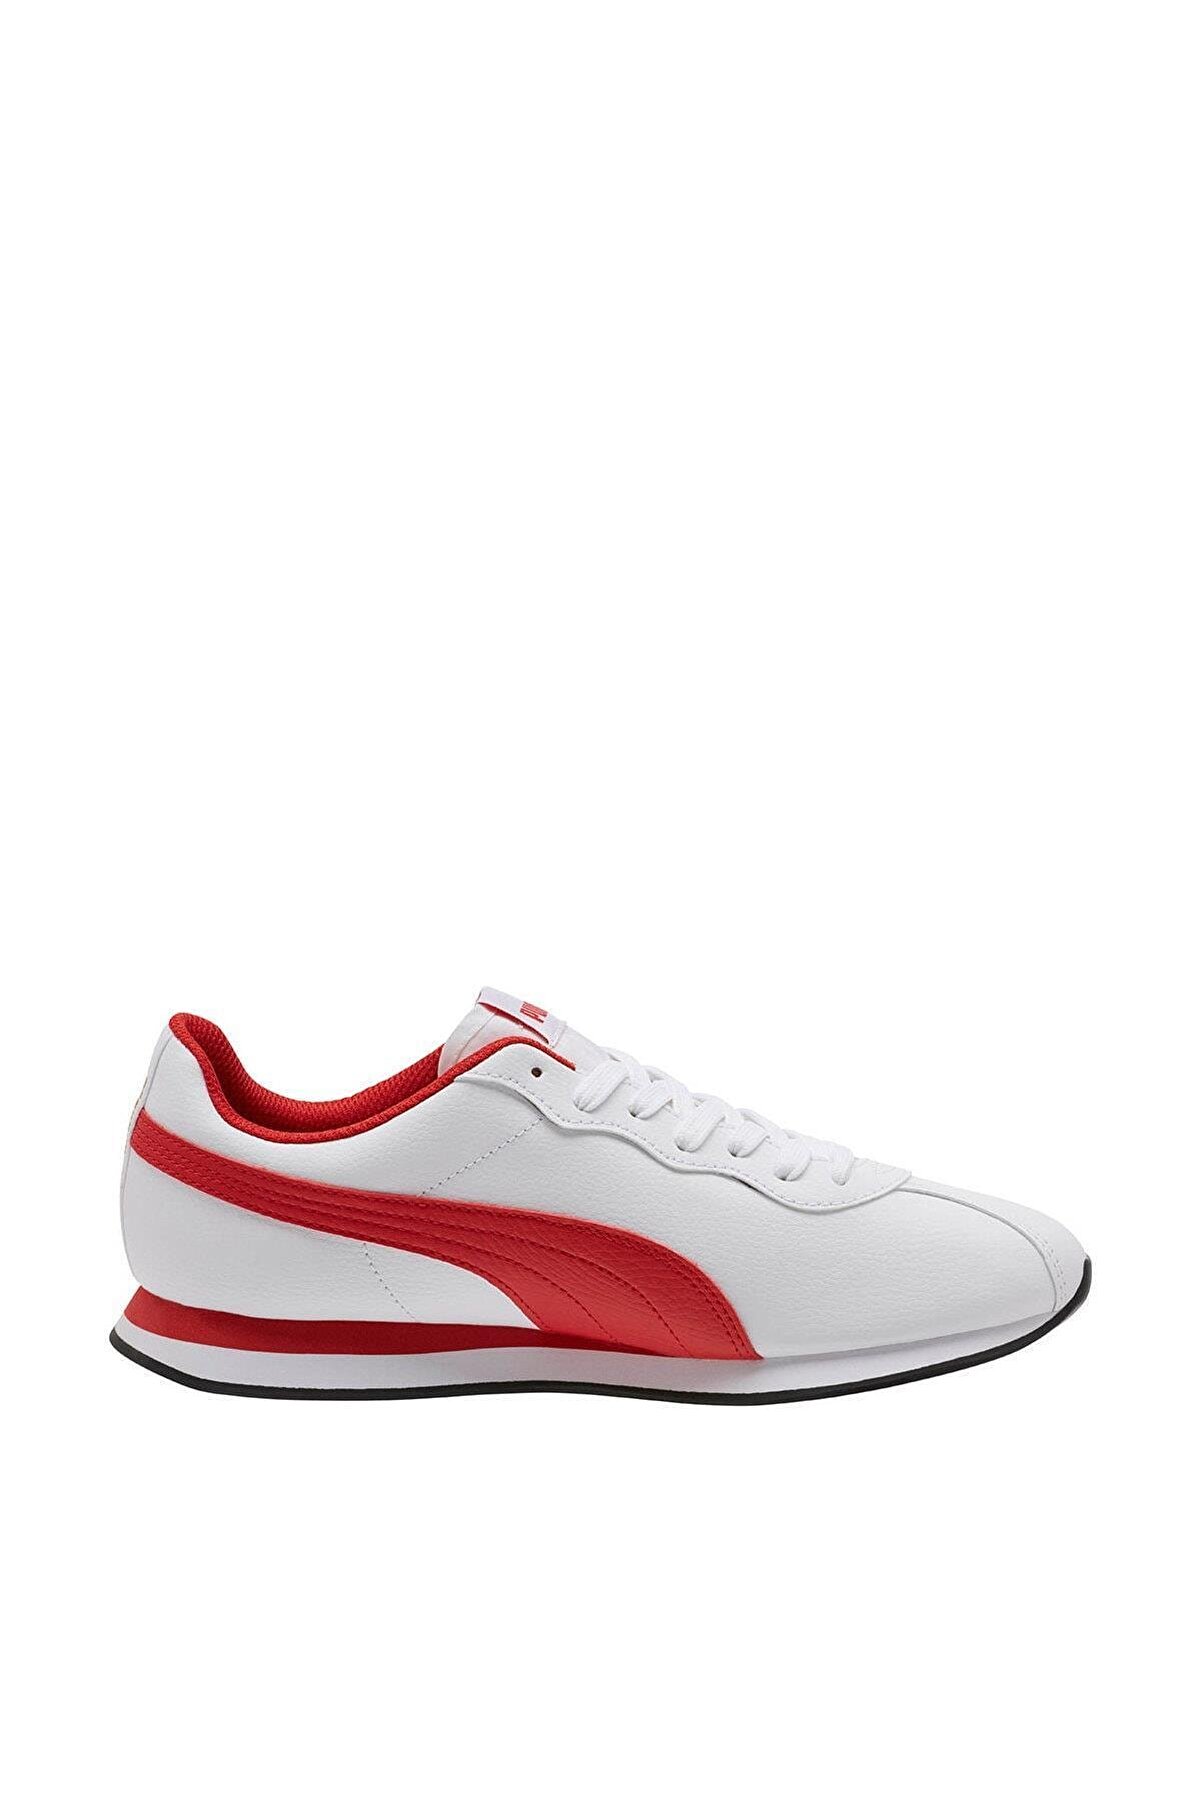 Puma Puma Turin Ii Beyaz Kırmızı Erkek Sneaker Ayakkabı 100415116